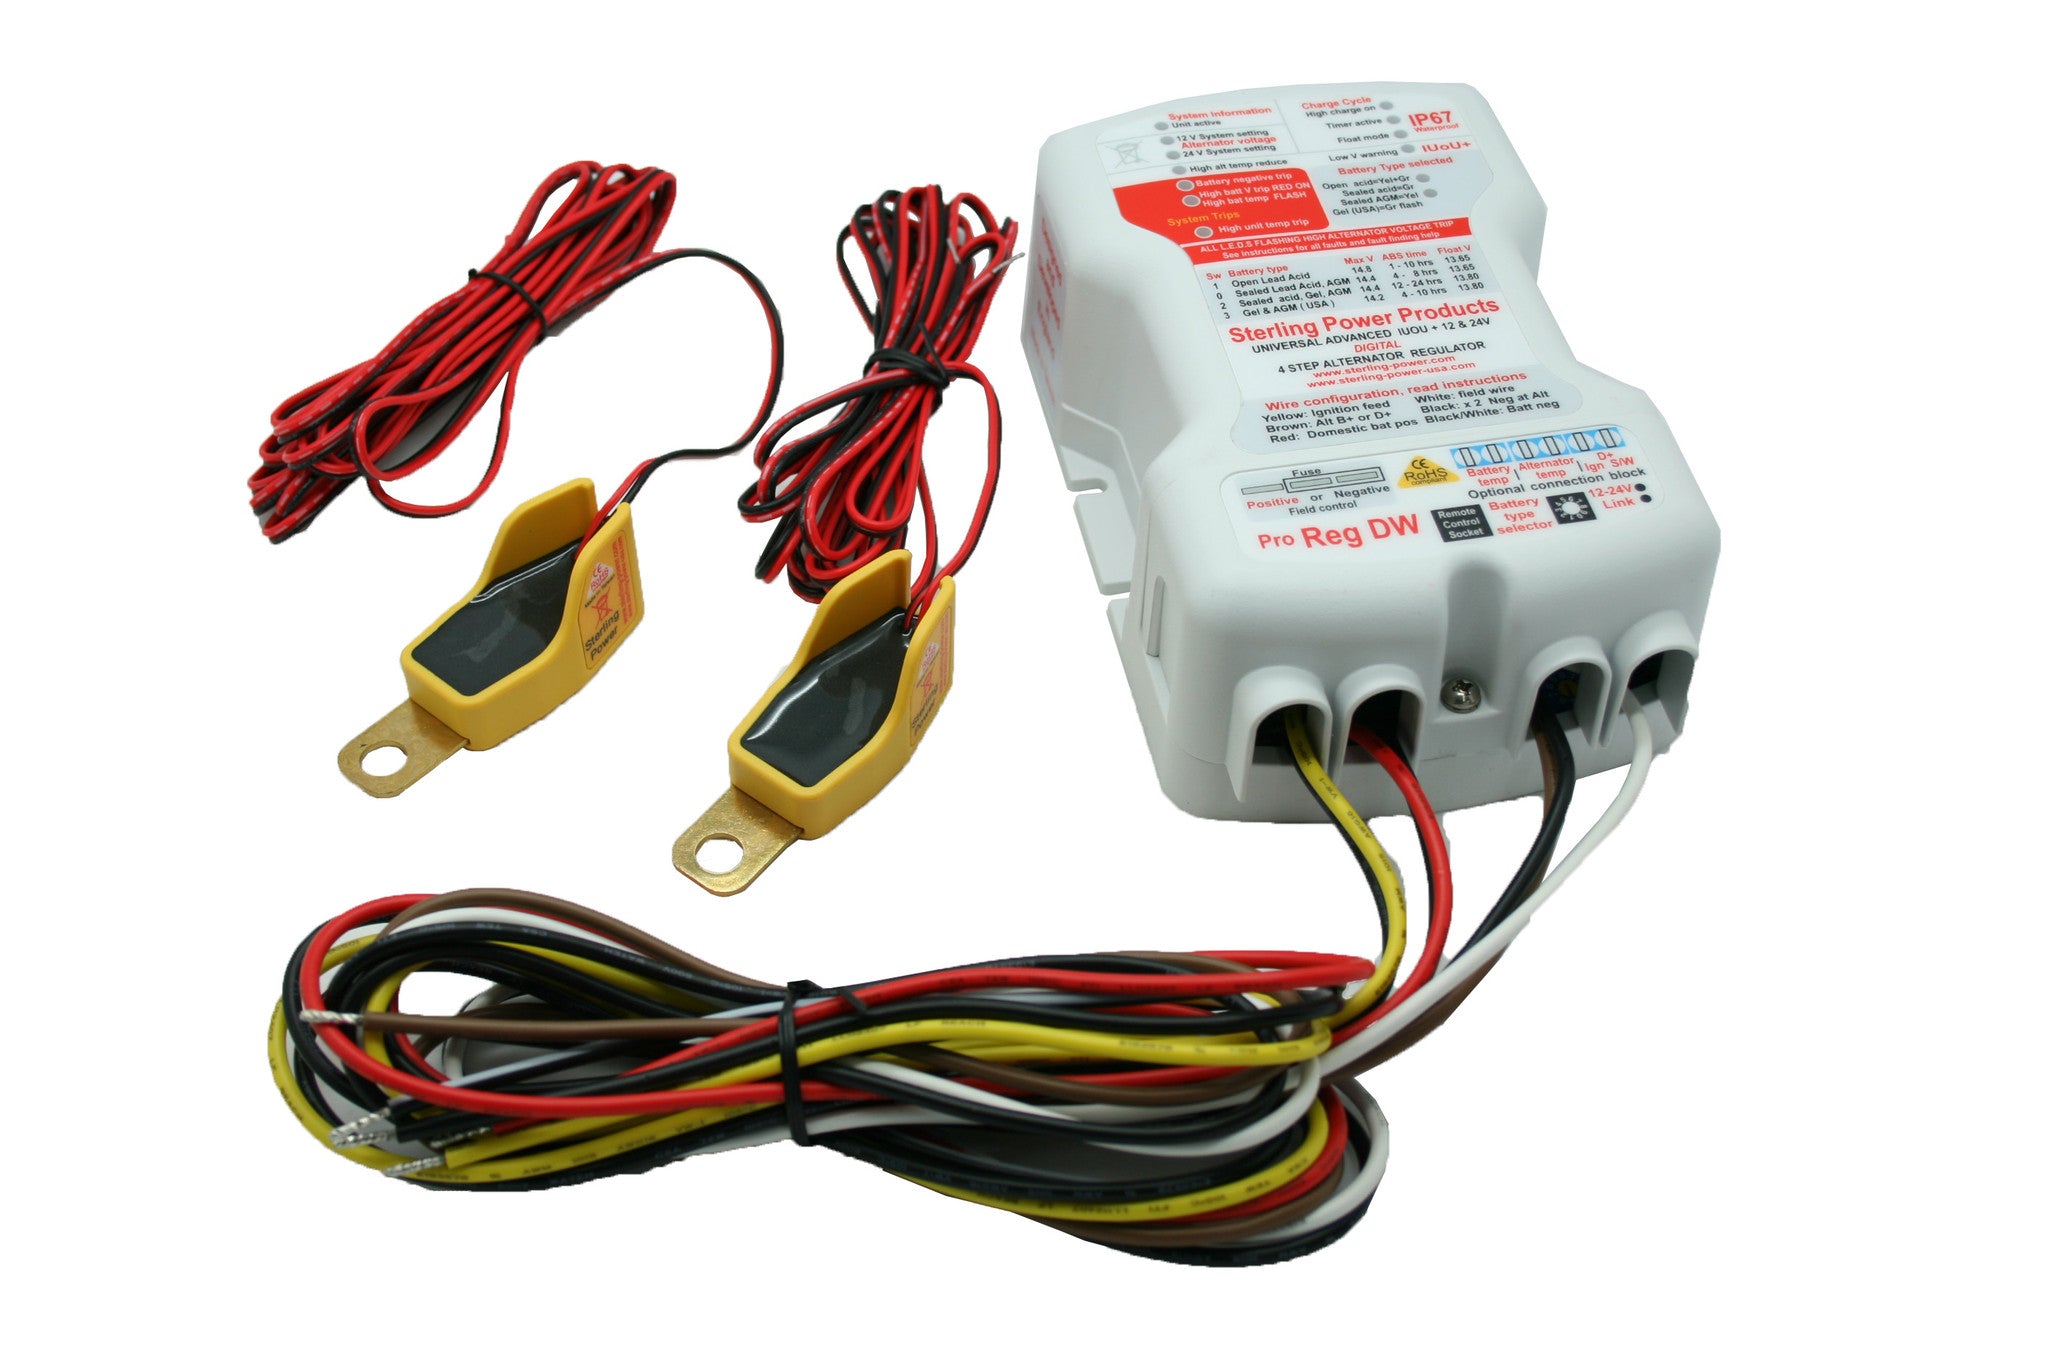 Battery Voltage Regulator 200 Amp for 12V DC Systems Including